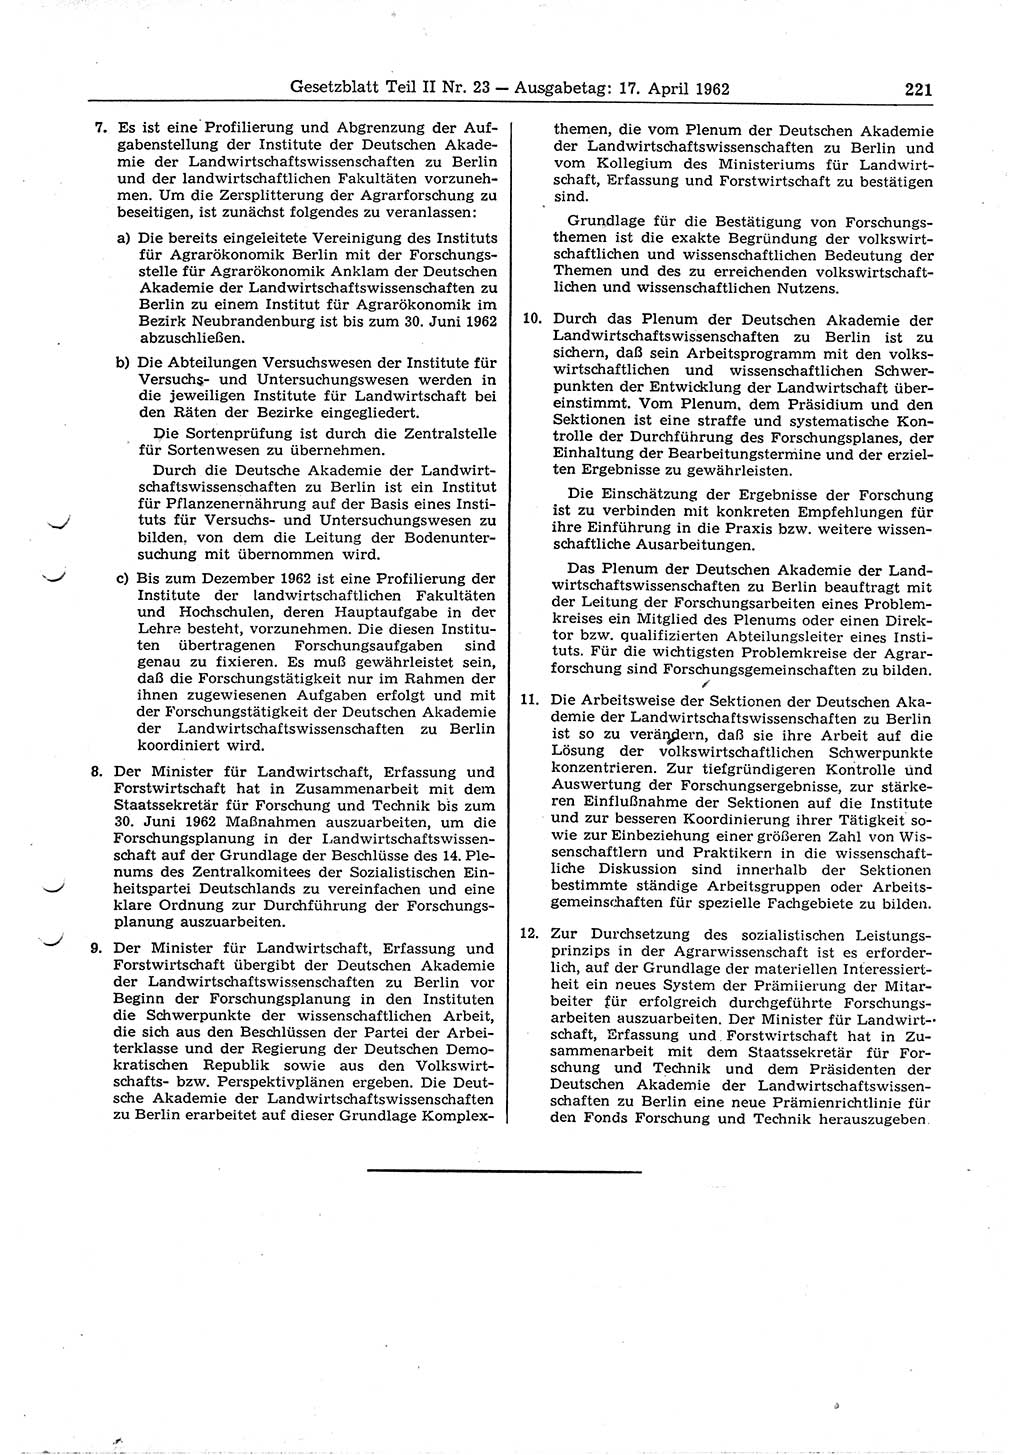 Gesetzblatt (GBl.) der Deutschen Demokratischen Republik (DDR) Teil ⅠⅠ 1962, Seite 221 (GBl. DDR ⅠⅠ 1962, S. 221)